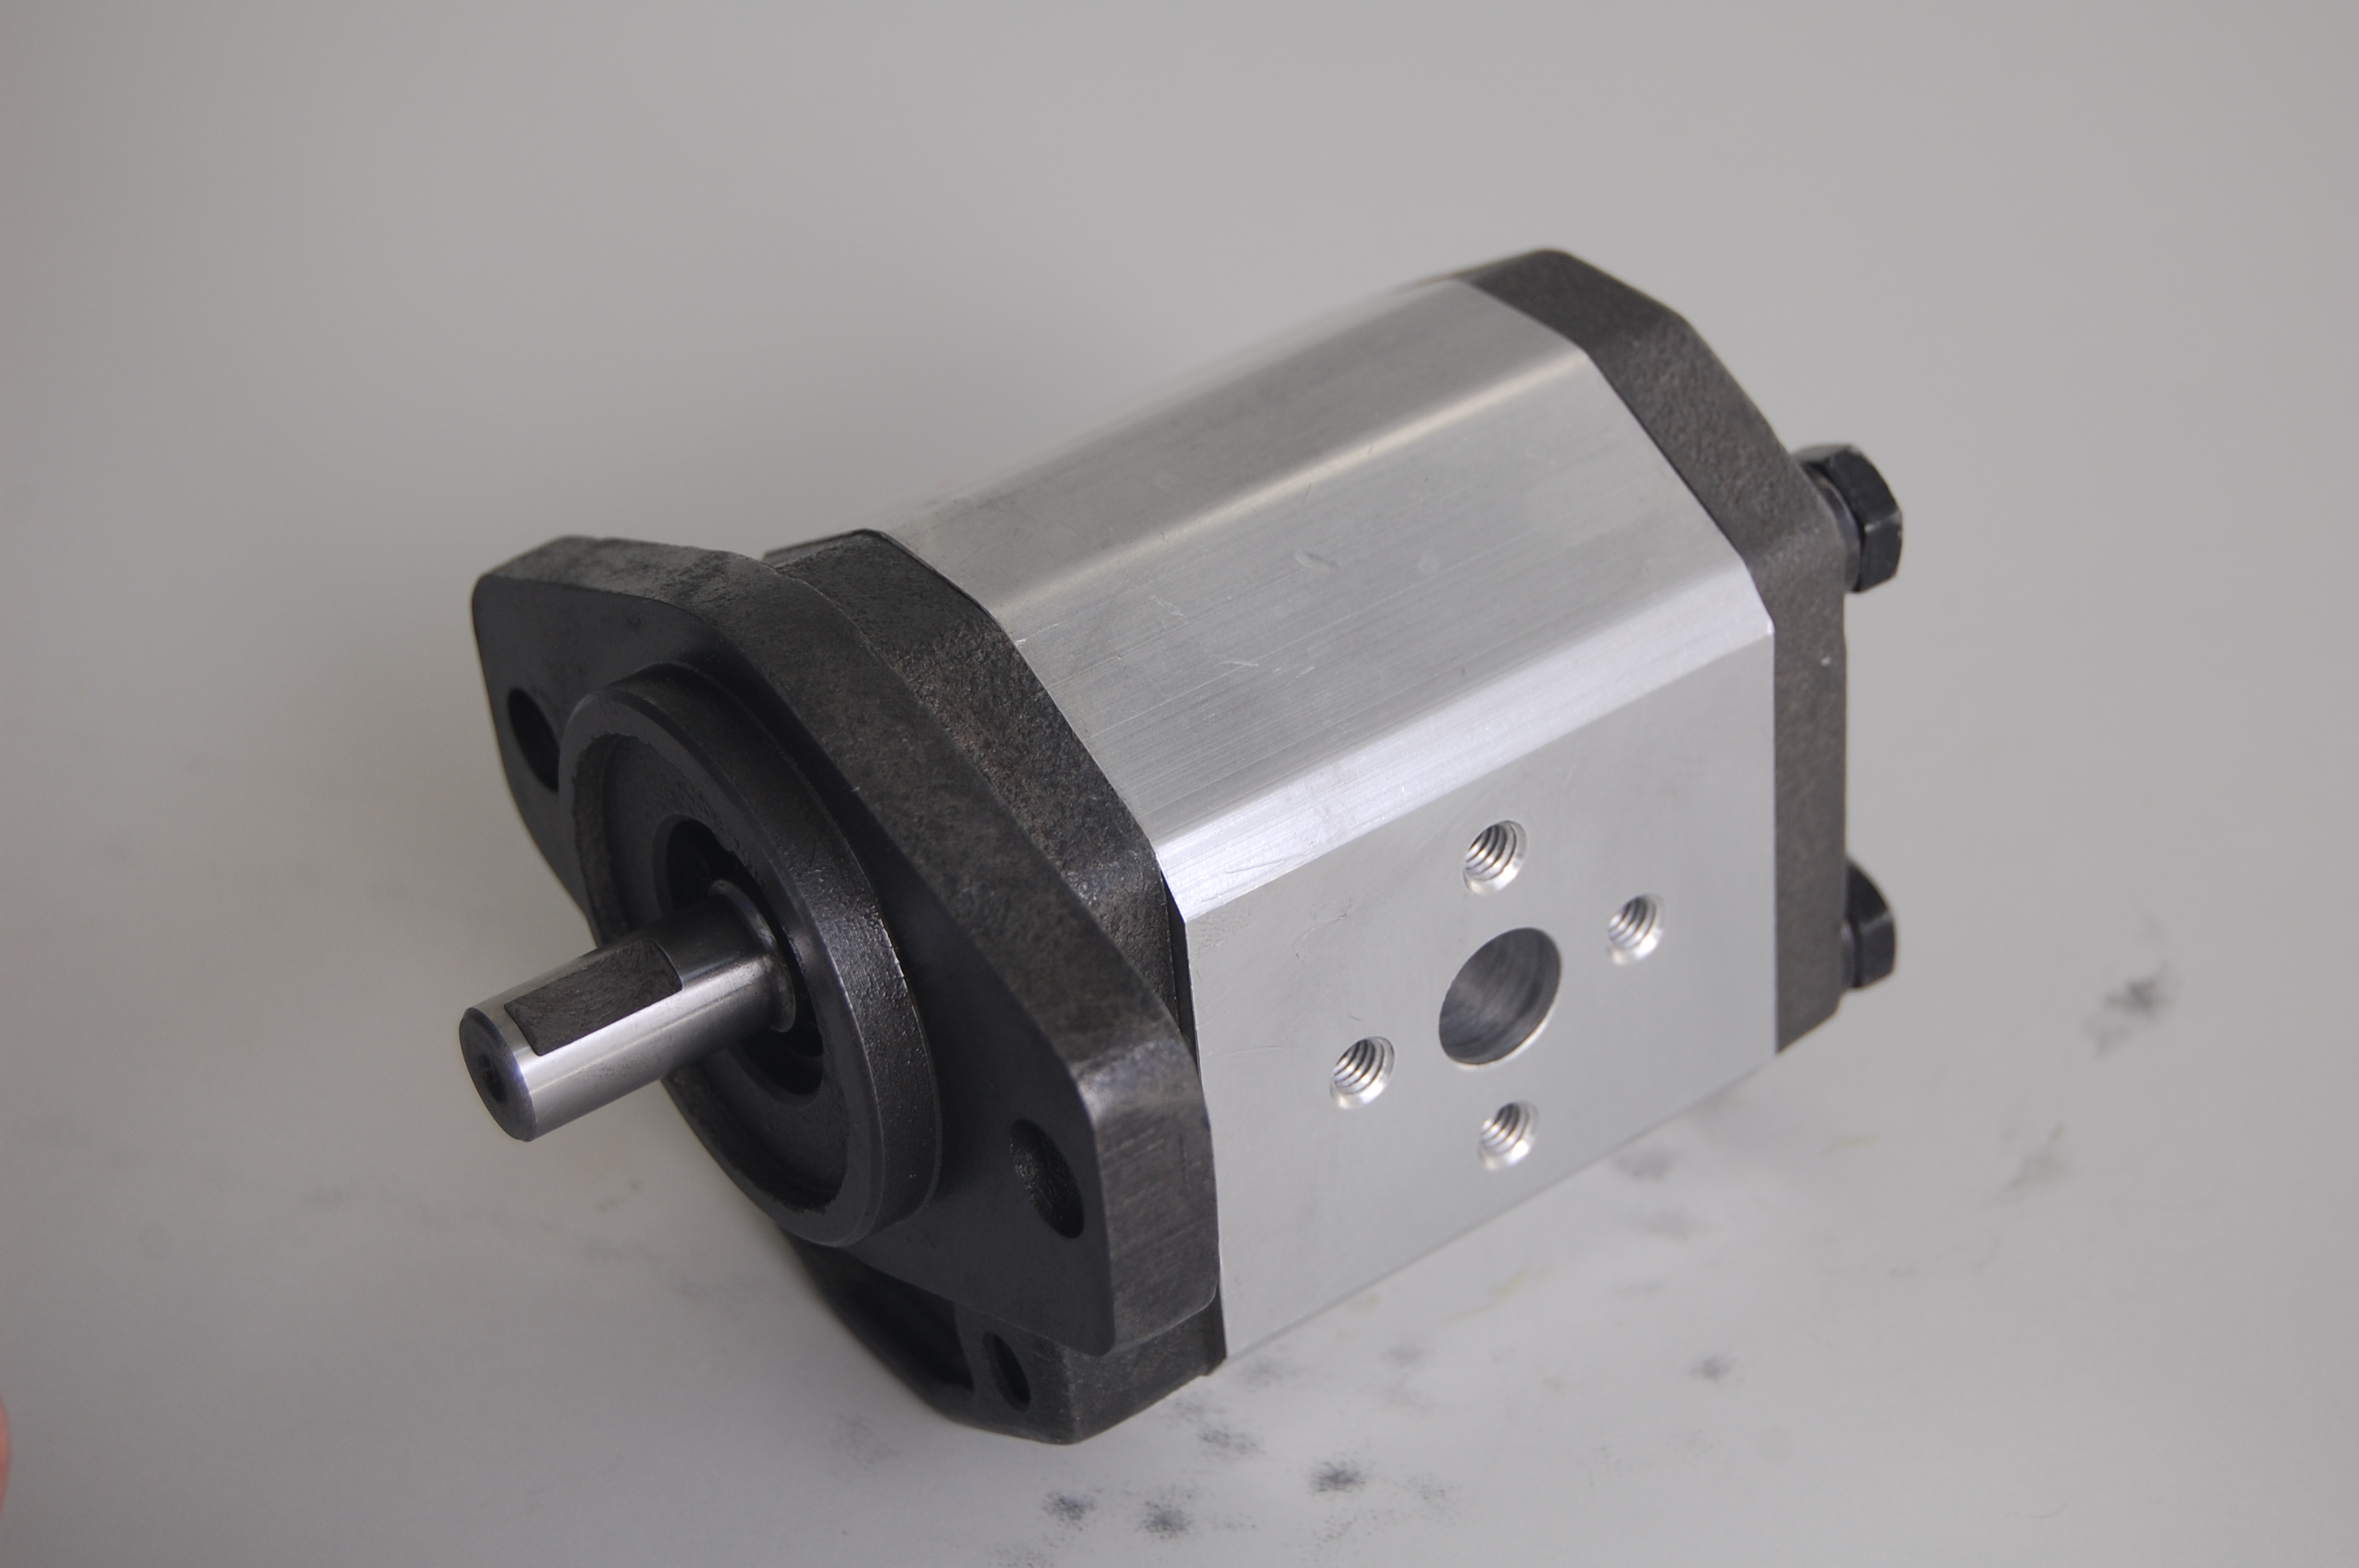 Quality Bosch Rexroth 2A0 Hydraulic internal gear pumps for Hydraulic system for sale